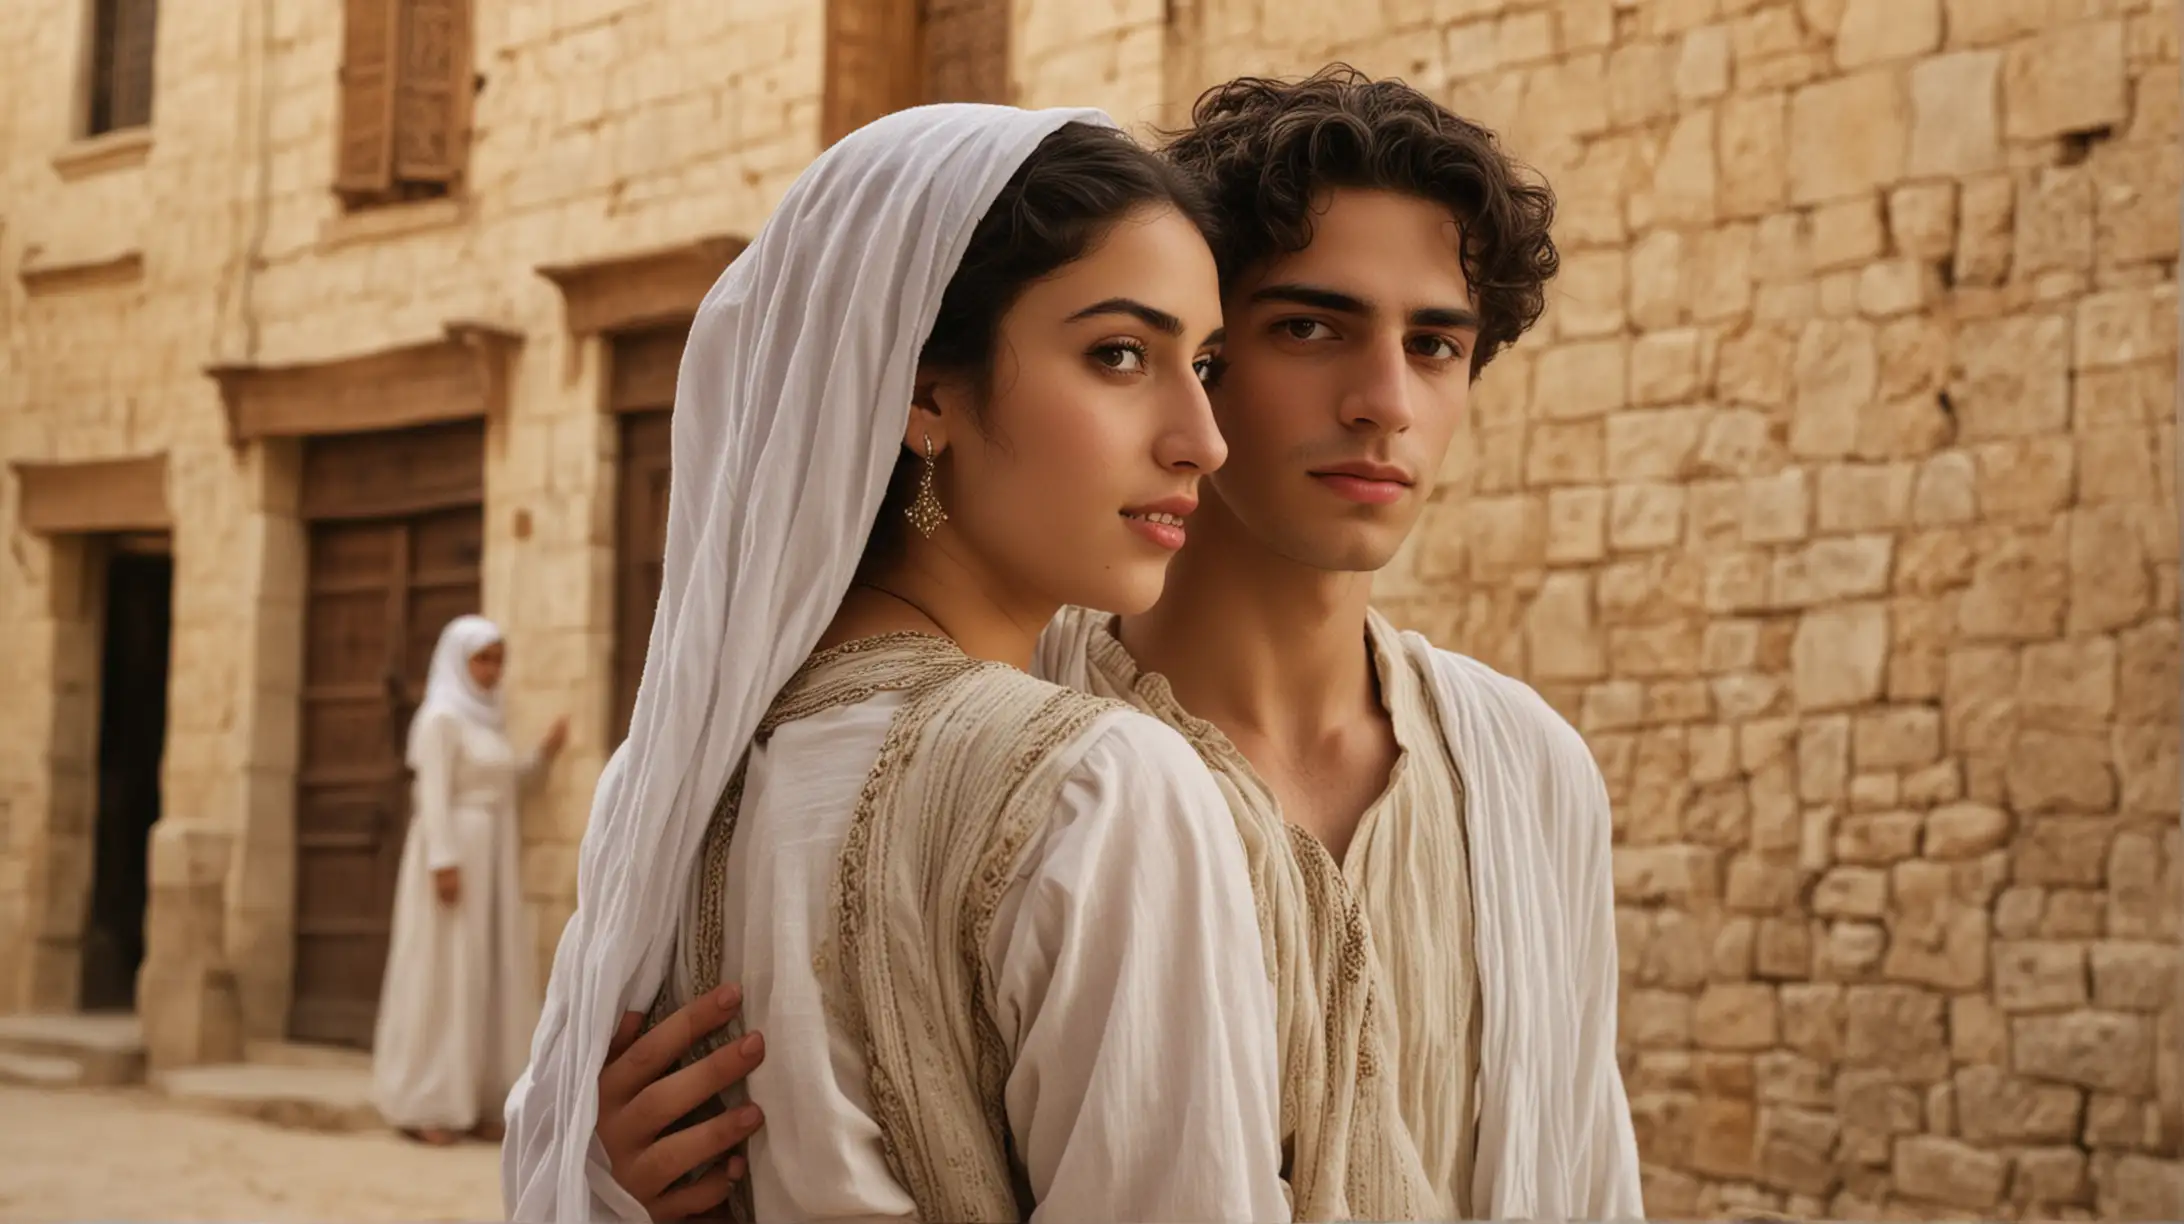 Biblical Era Jewish Man and Arab Woman in Town Setting